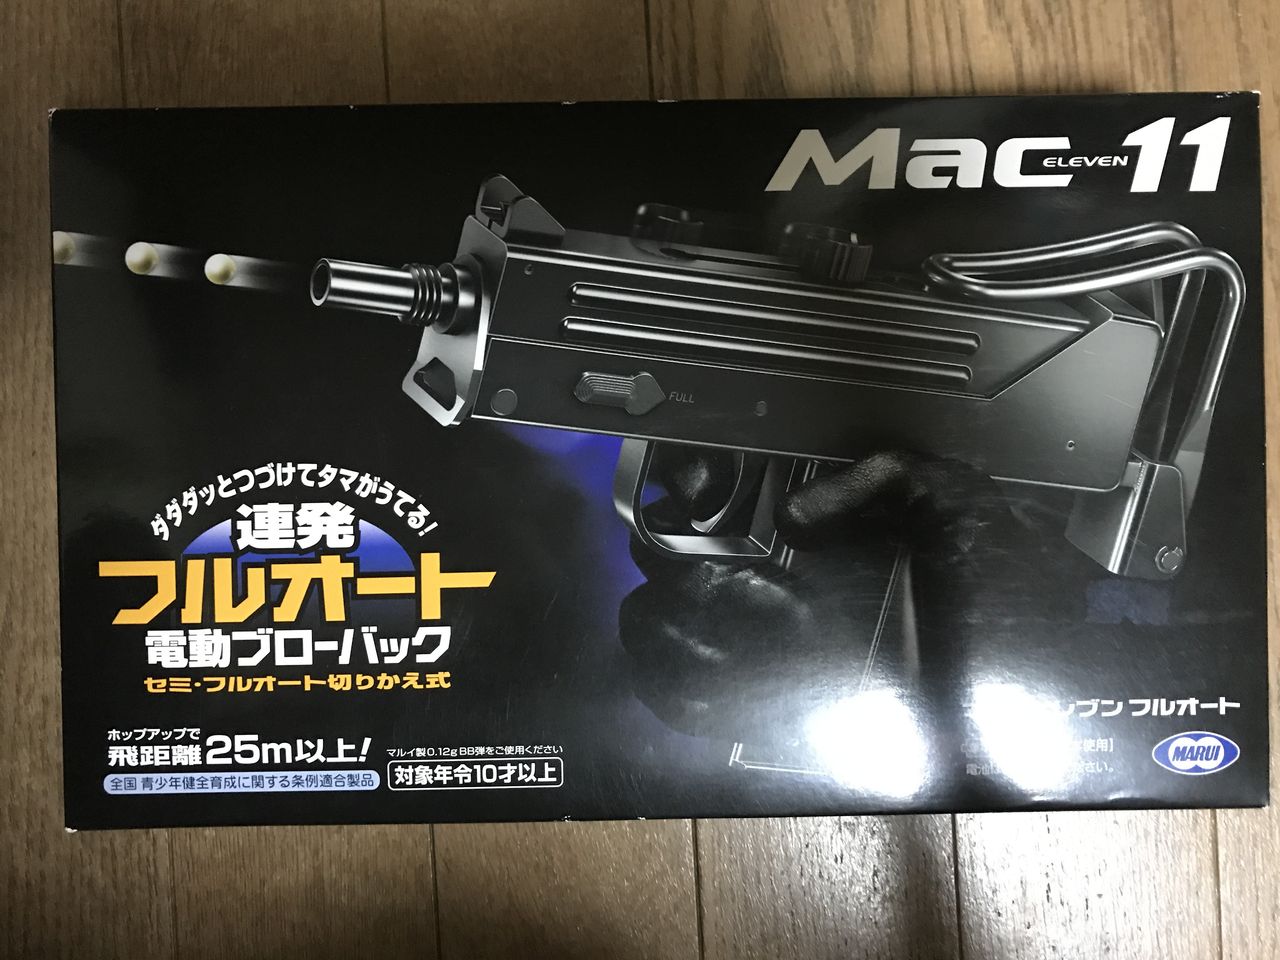 あなたにおすすめの商品 東京マルイ マック11 Mac11 フルオートセミオート可 10禁 おまけ付き